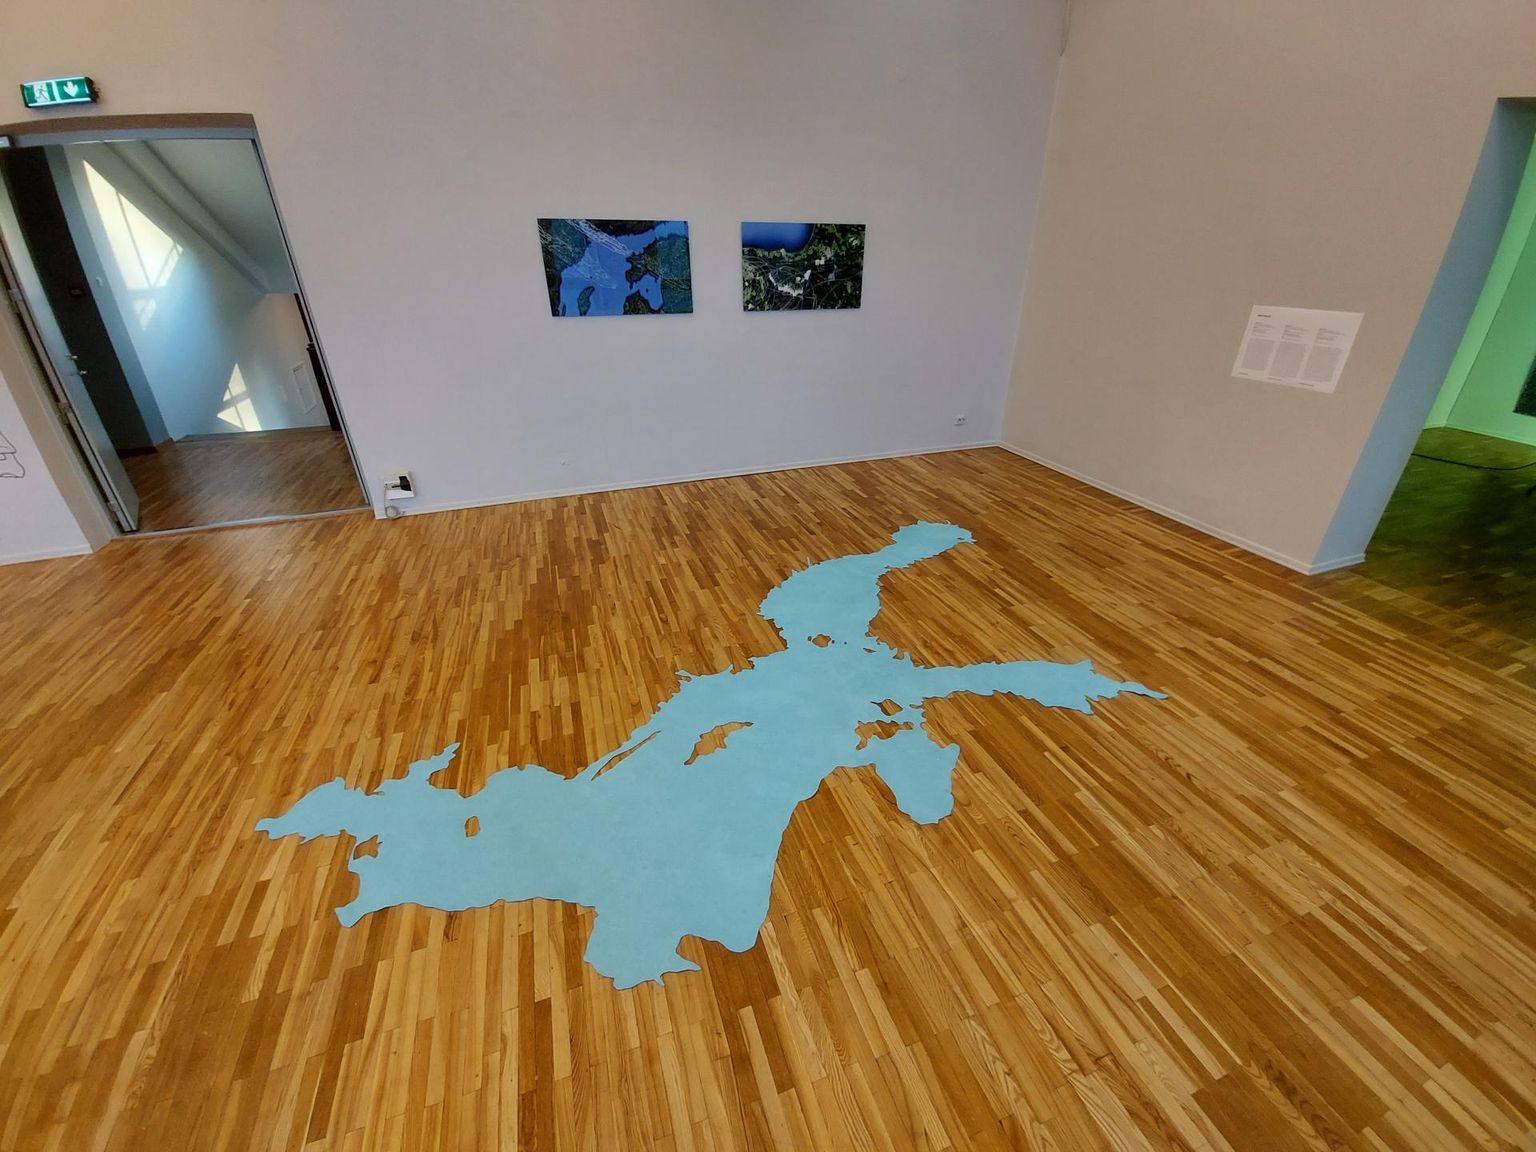 Anna Guillo väljapaneku üks osa on põrandale laotatud «Läänemeri».